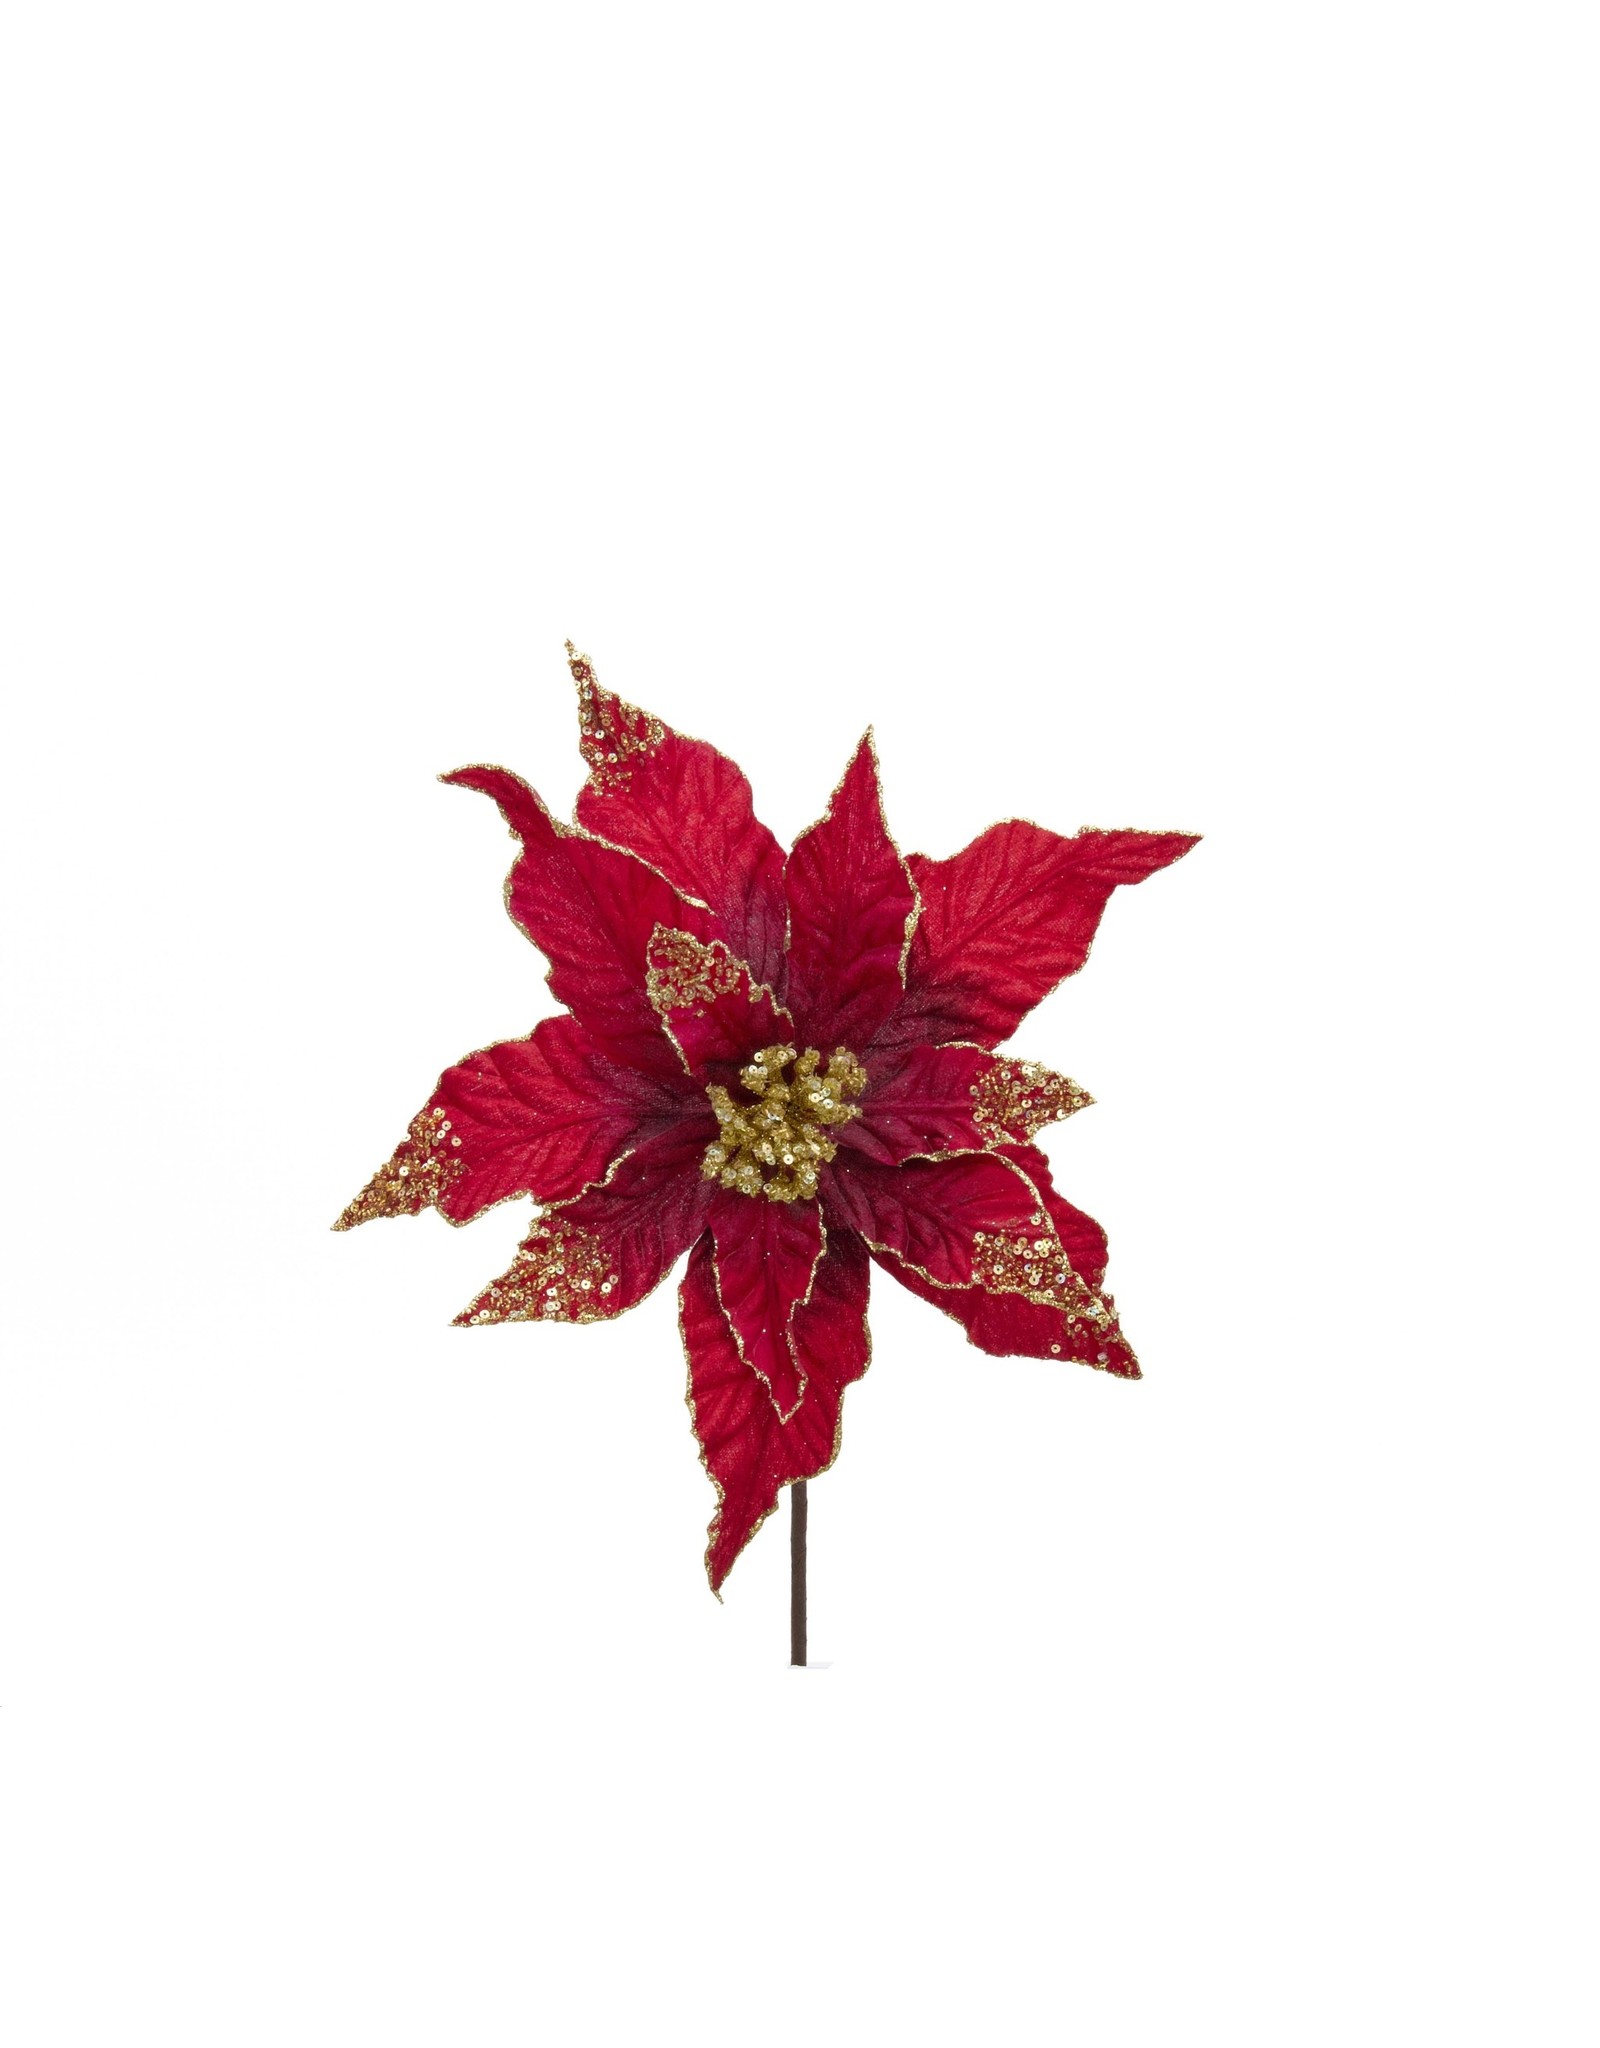 Kurt Adler Red Velvet Poinsettia 16 Inch Christmas Flowers Floral